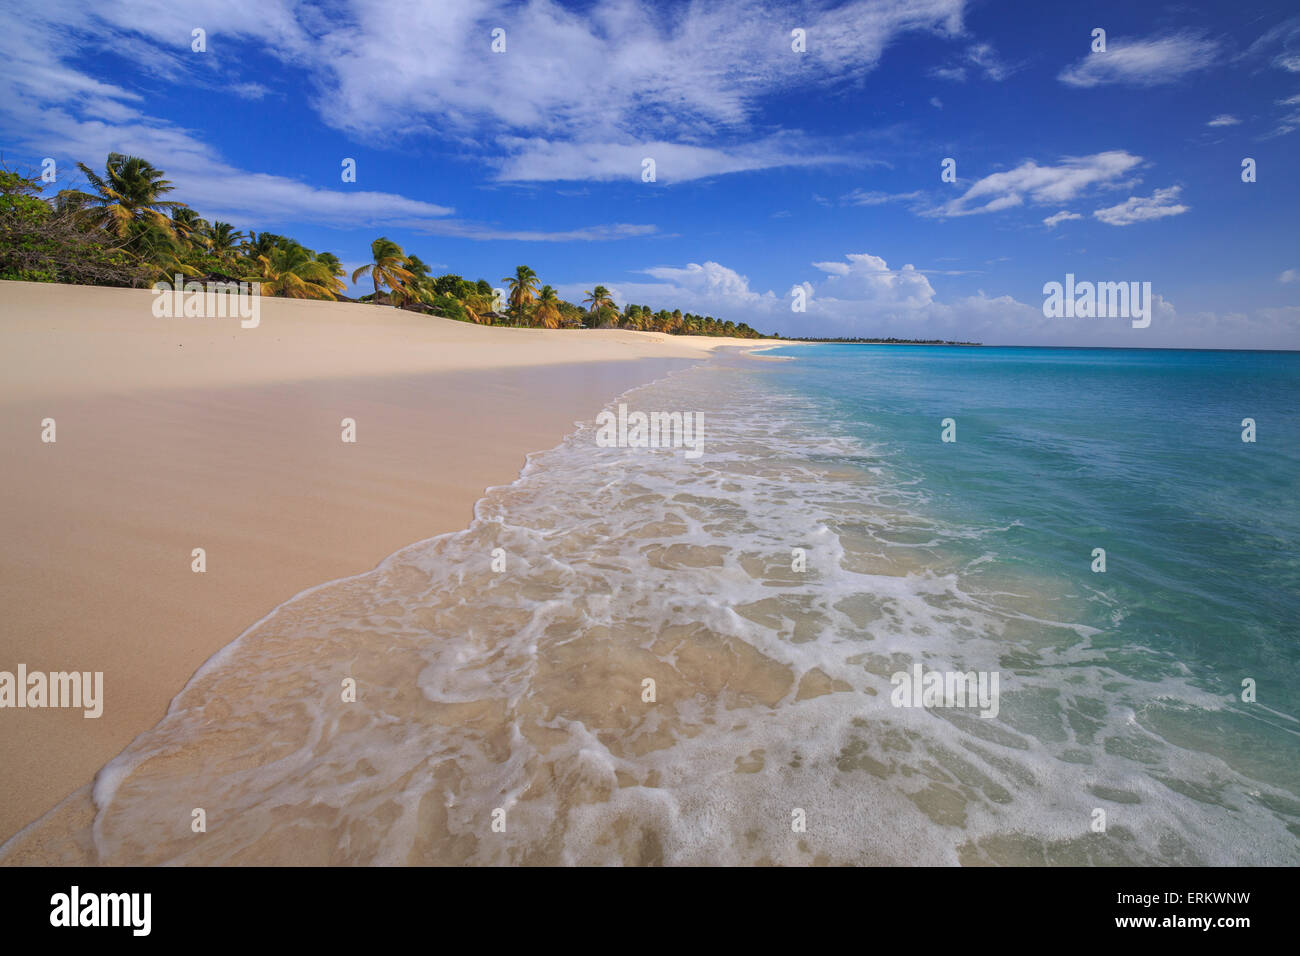 La plage déserte de K-Club, situé non loin du village, fermée depuis 2004, Barbuda, Antigua et Barbuda, Iles sous le vent Banque D'Images